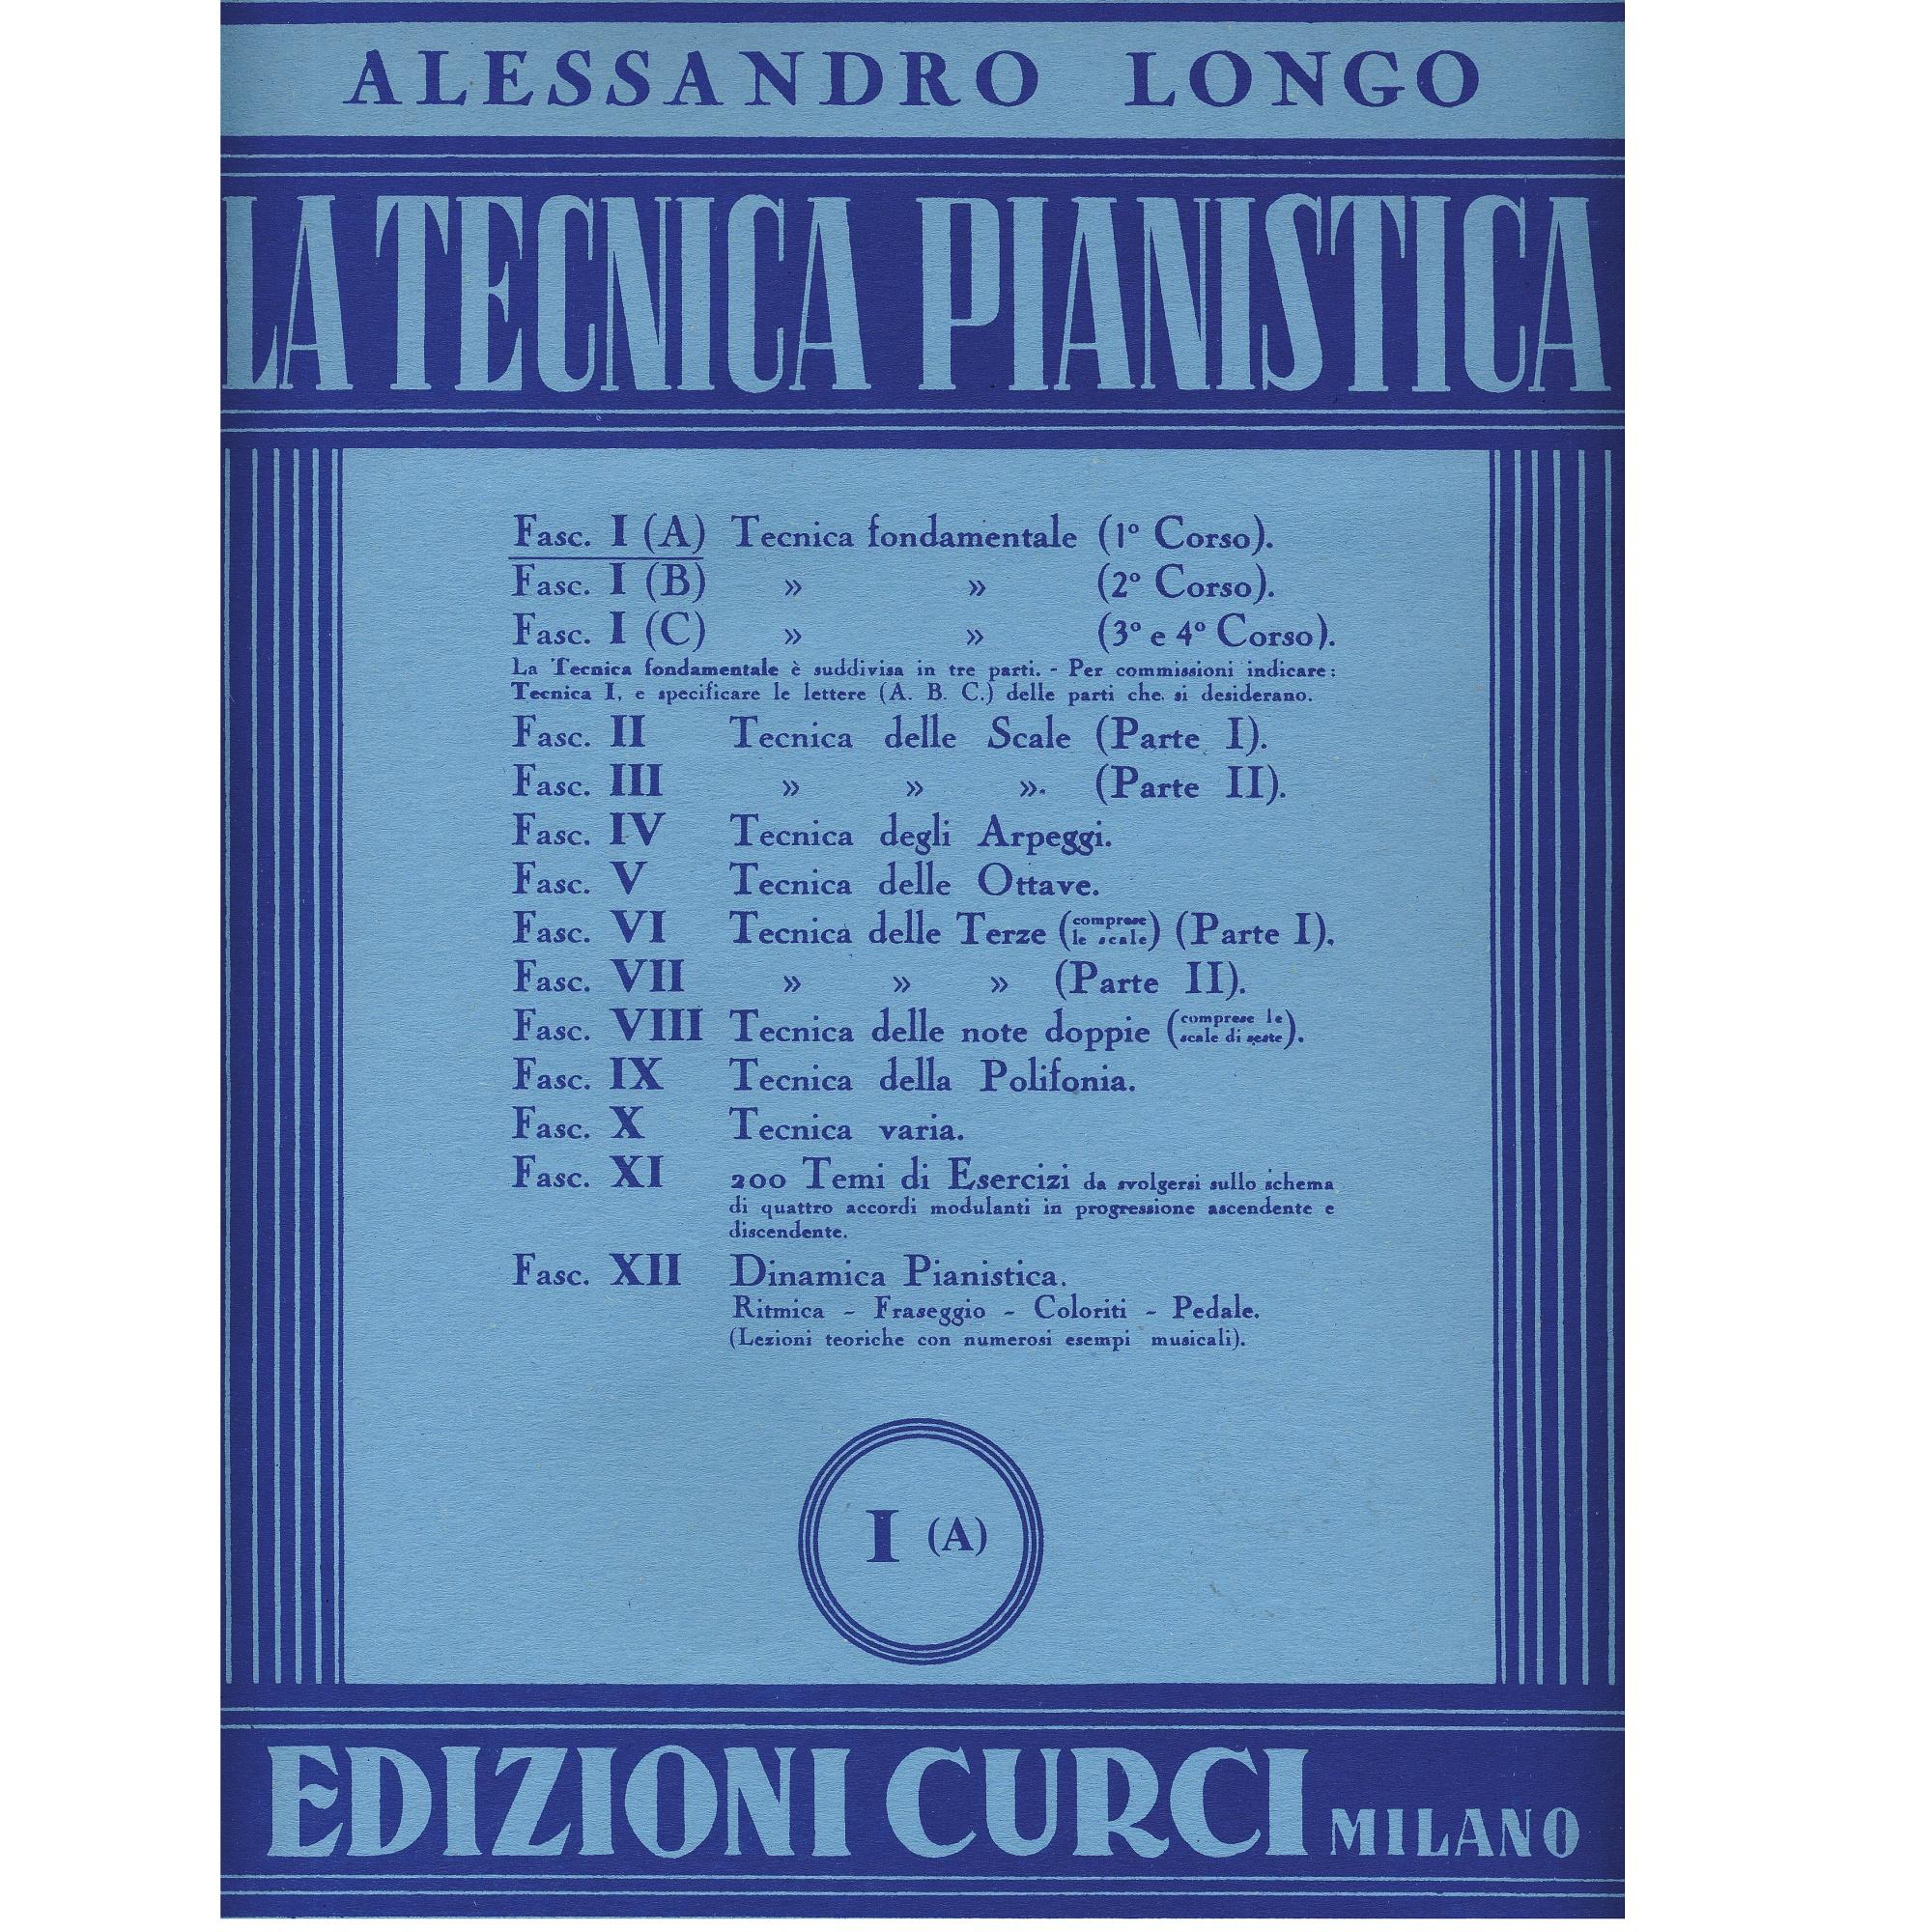 Longo La tecnica pianistica I A - Edizioni Curci Milano